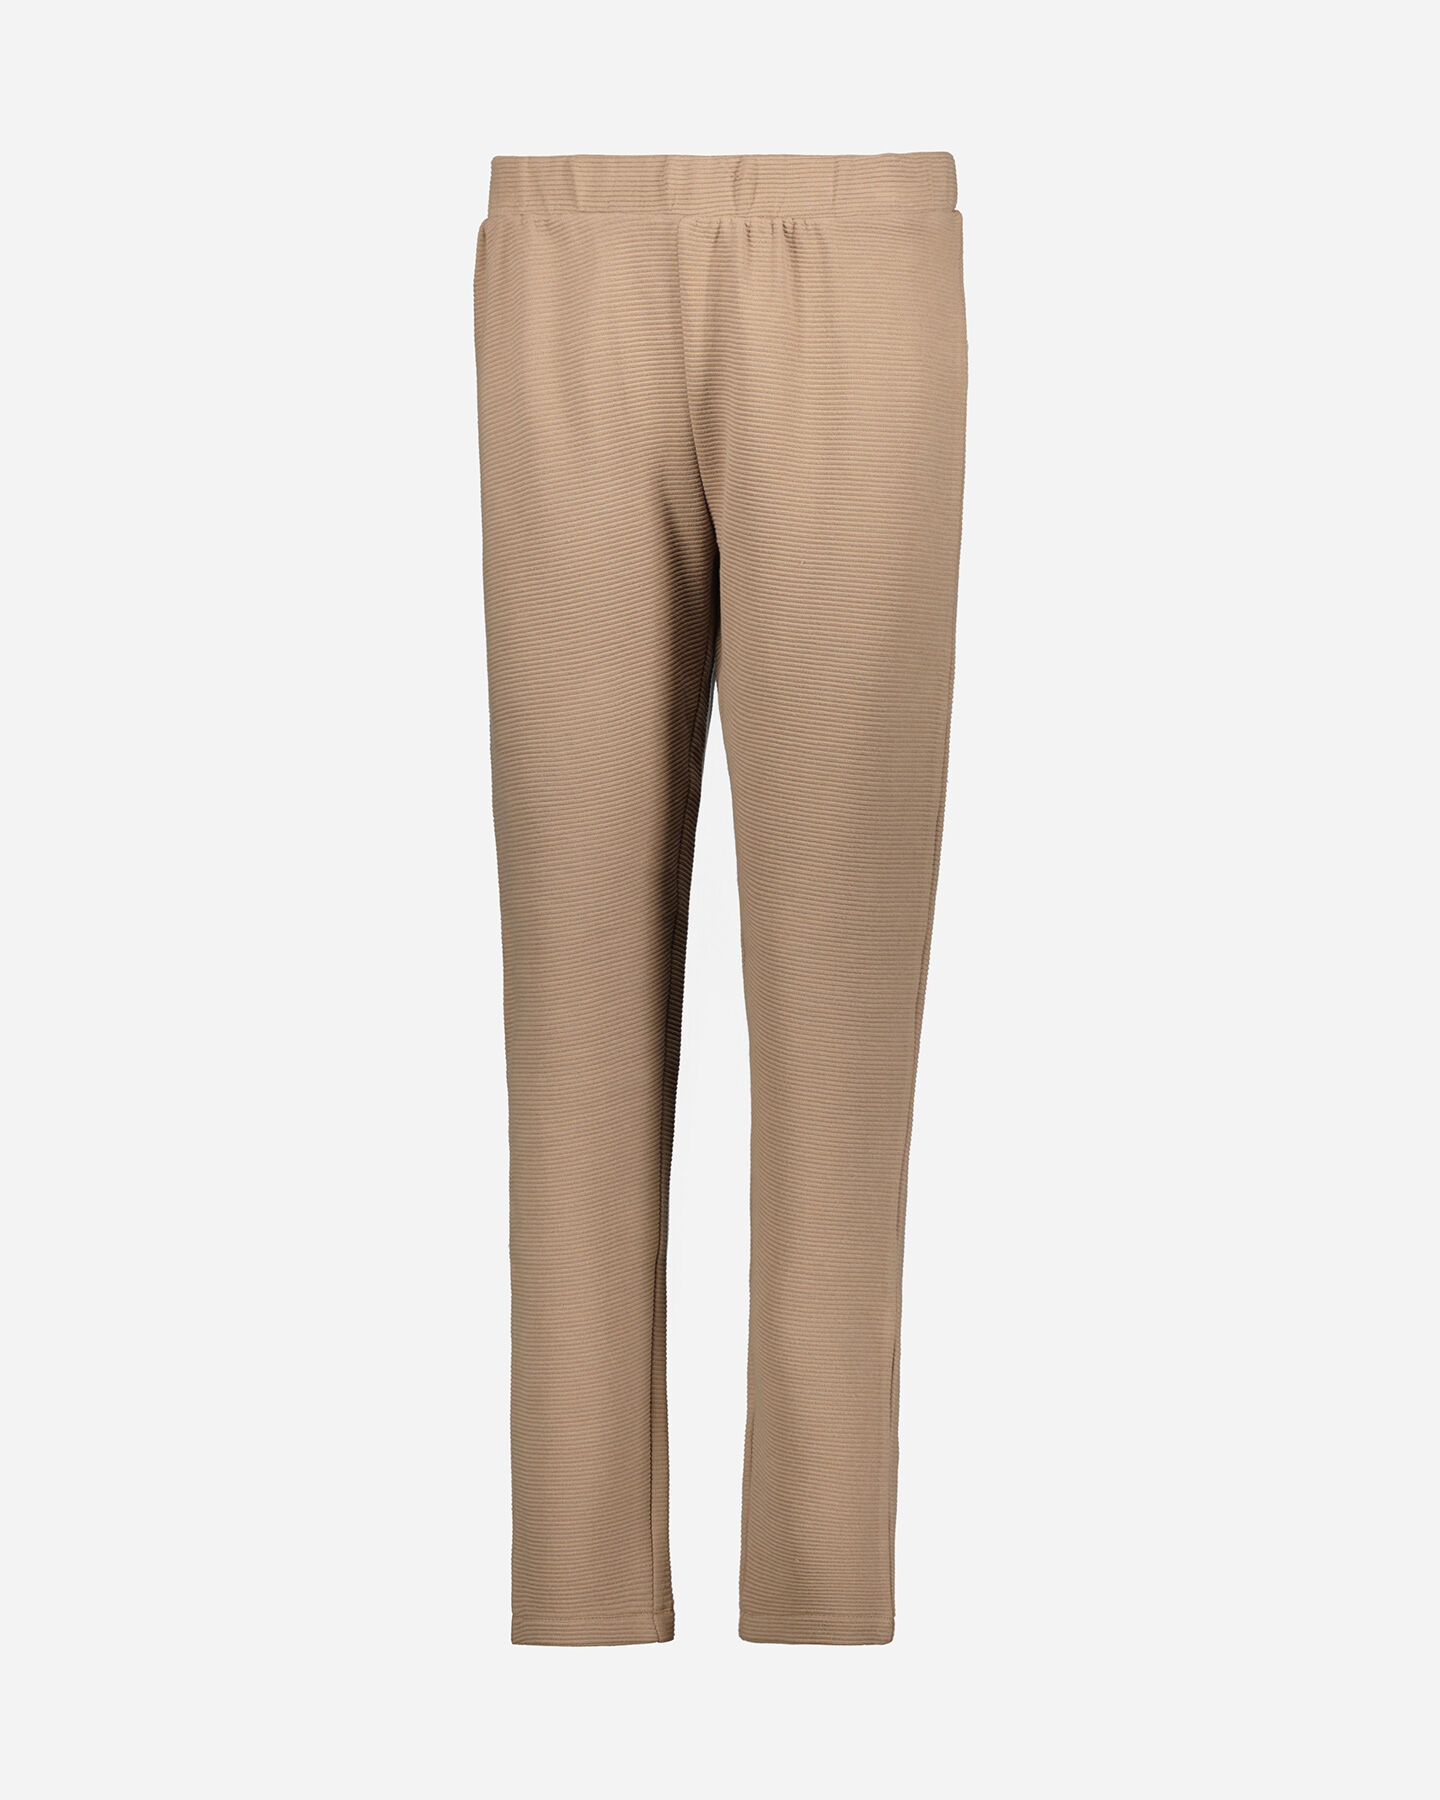  Pantalone ADMIRAL CLASSIC W S4119471|168|S scatto 0